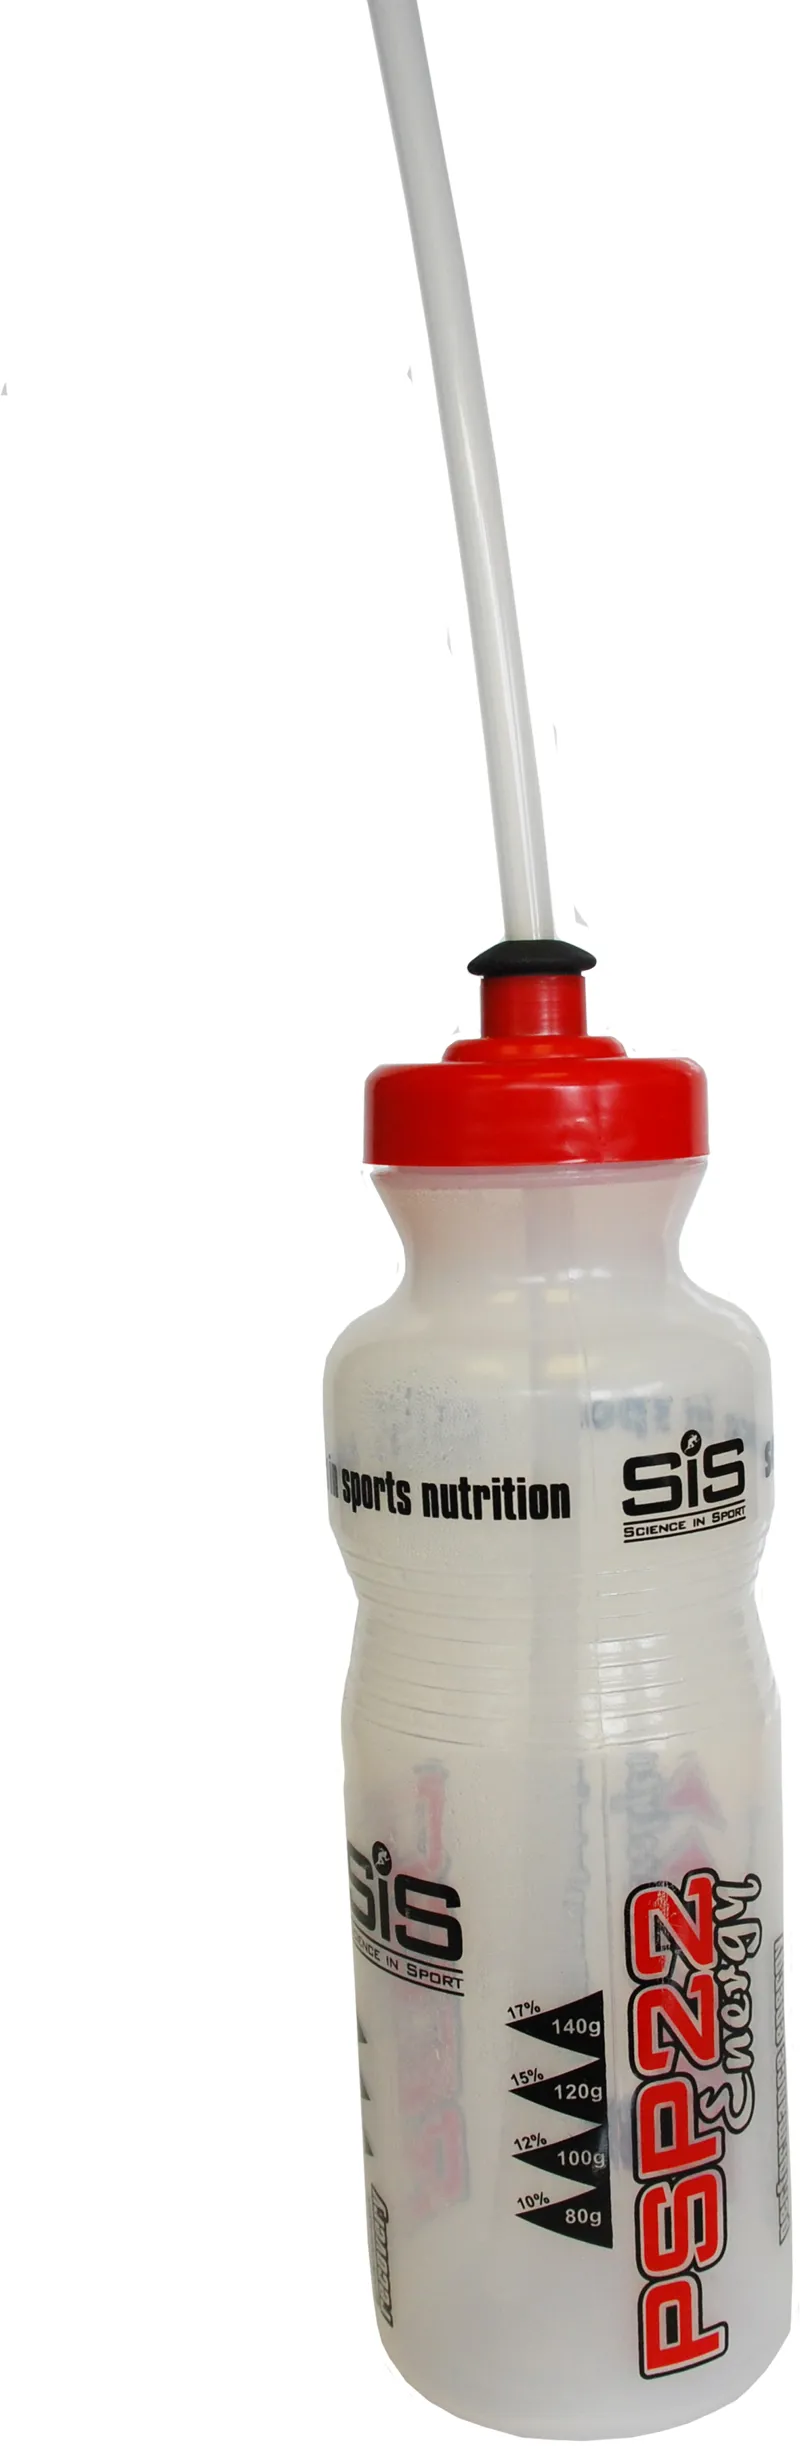 Science in sport water bottle